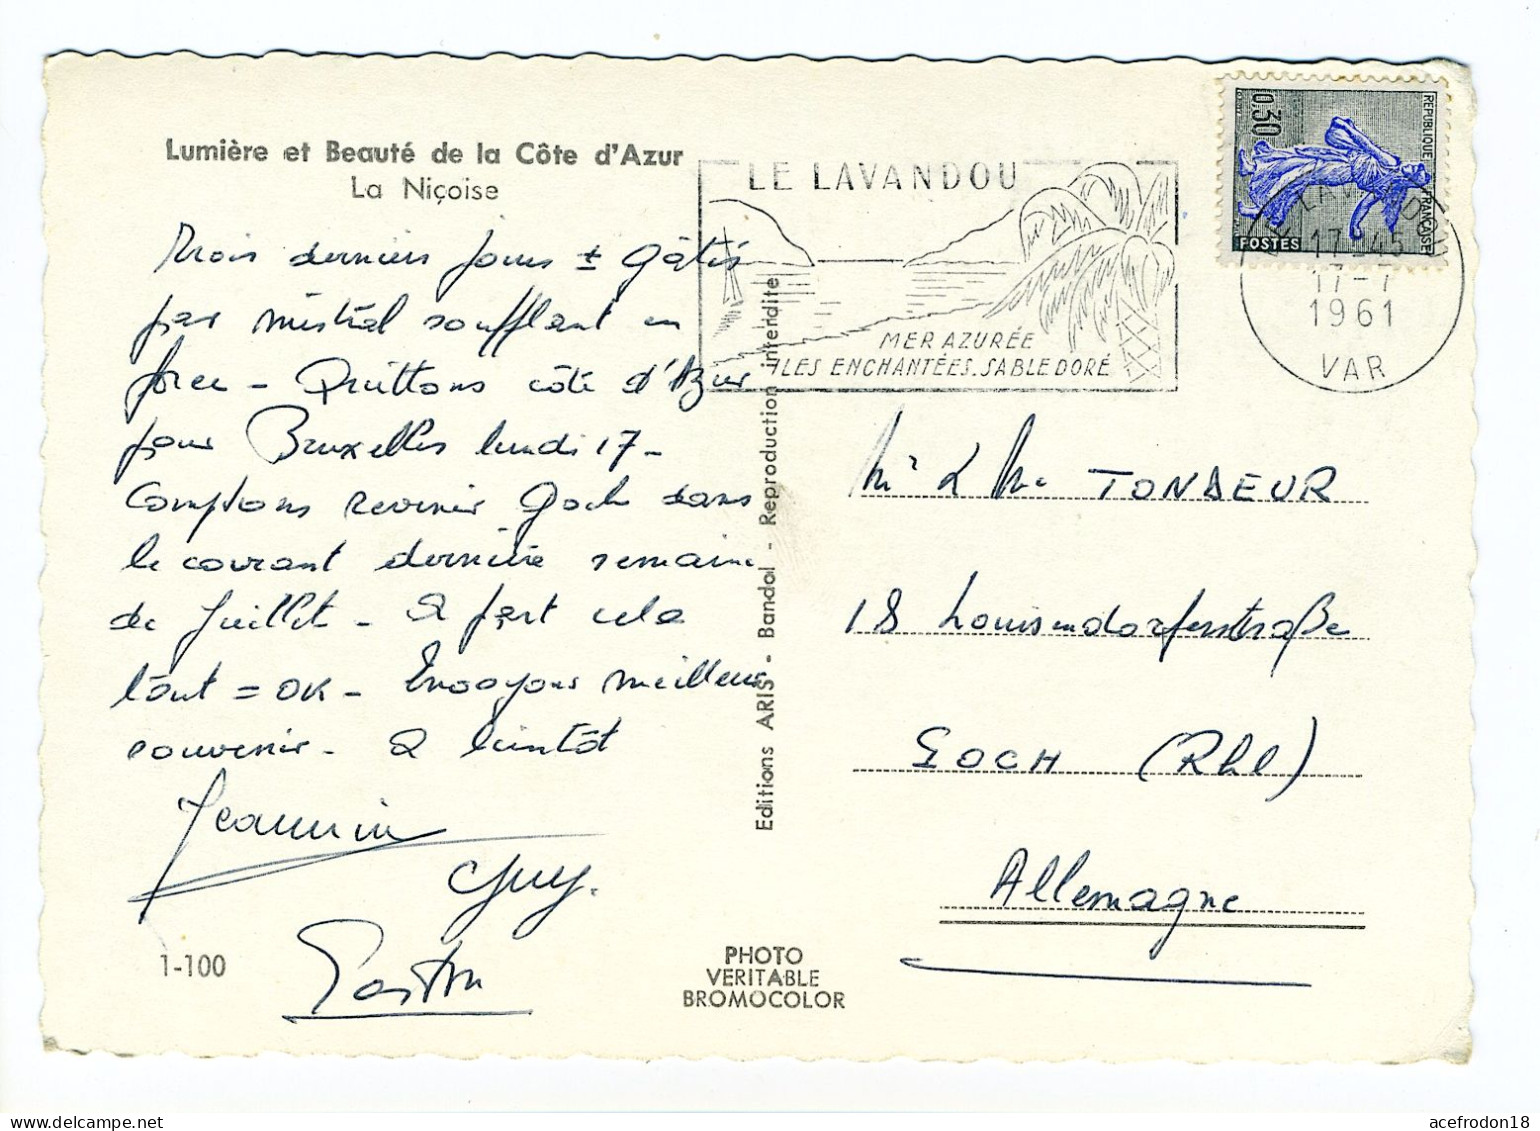 Cpsm Du Lavandou (Var) Pour Goch (ALL) - Timbre 0.30f Semeuse De Piel 1961 - Used Stamps